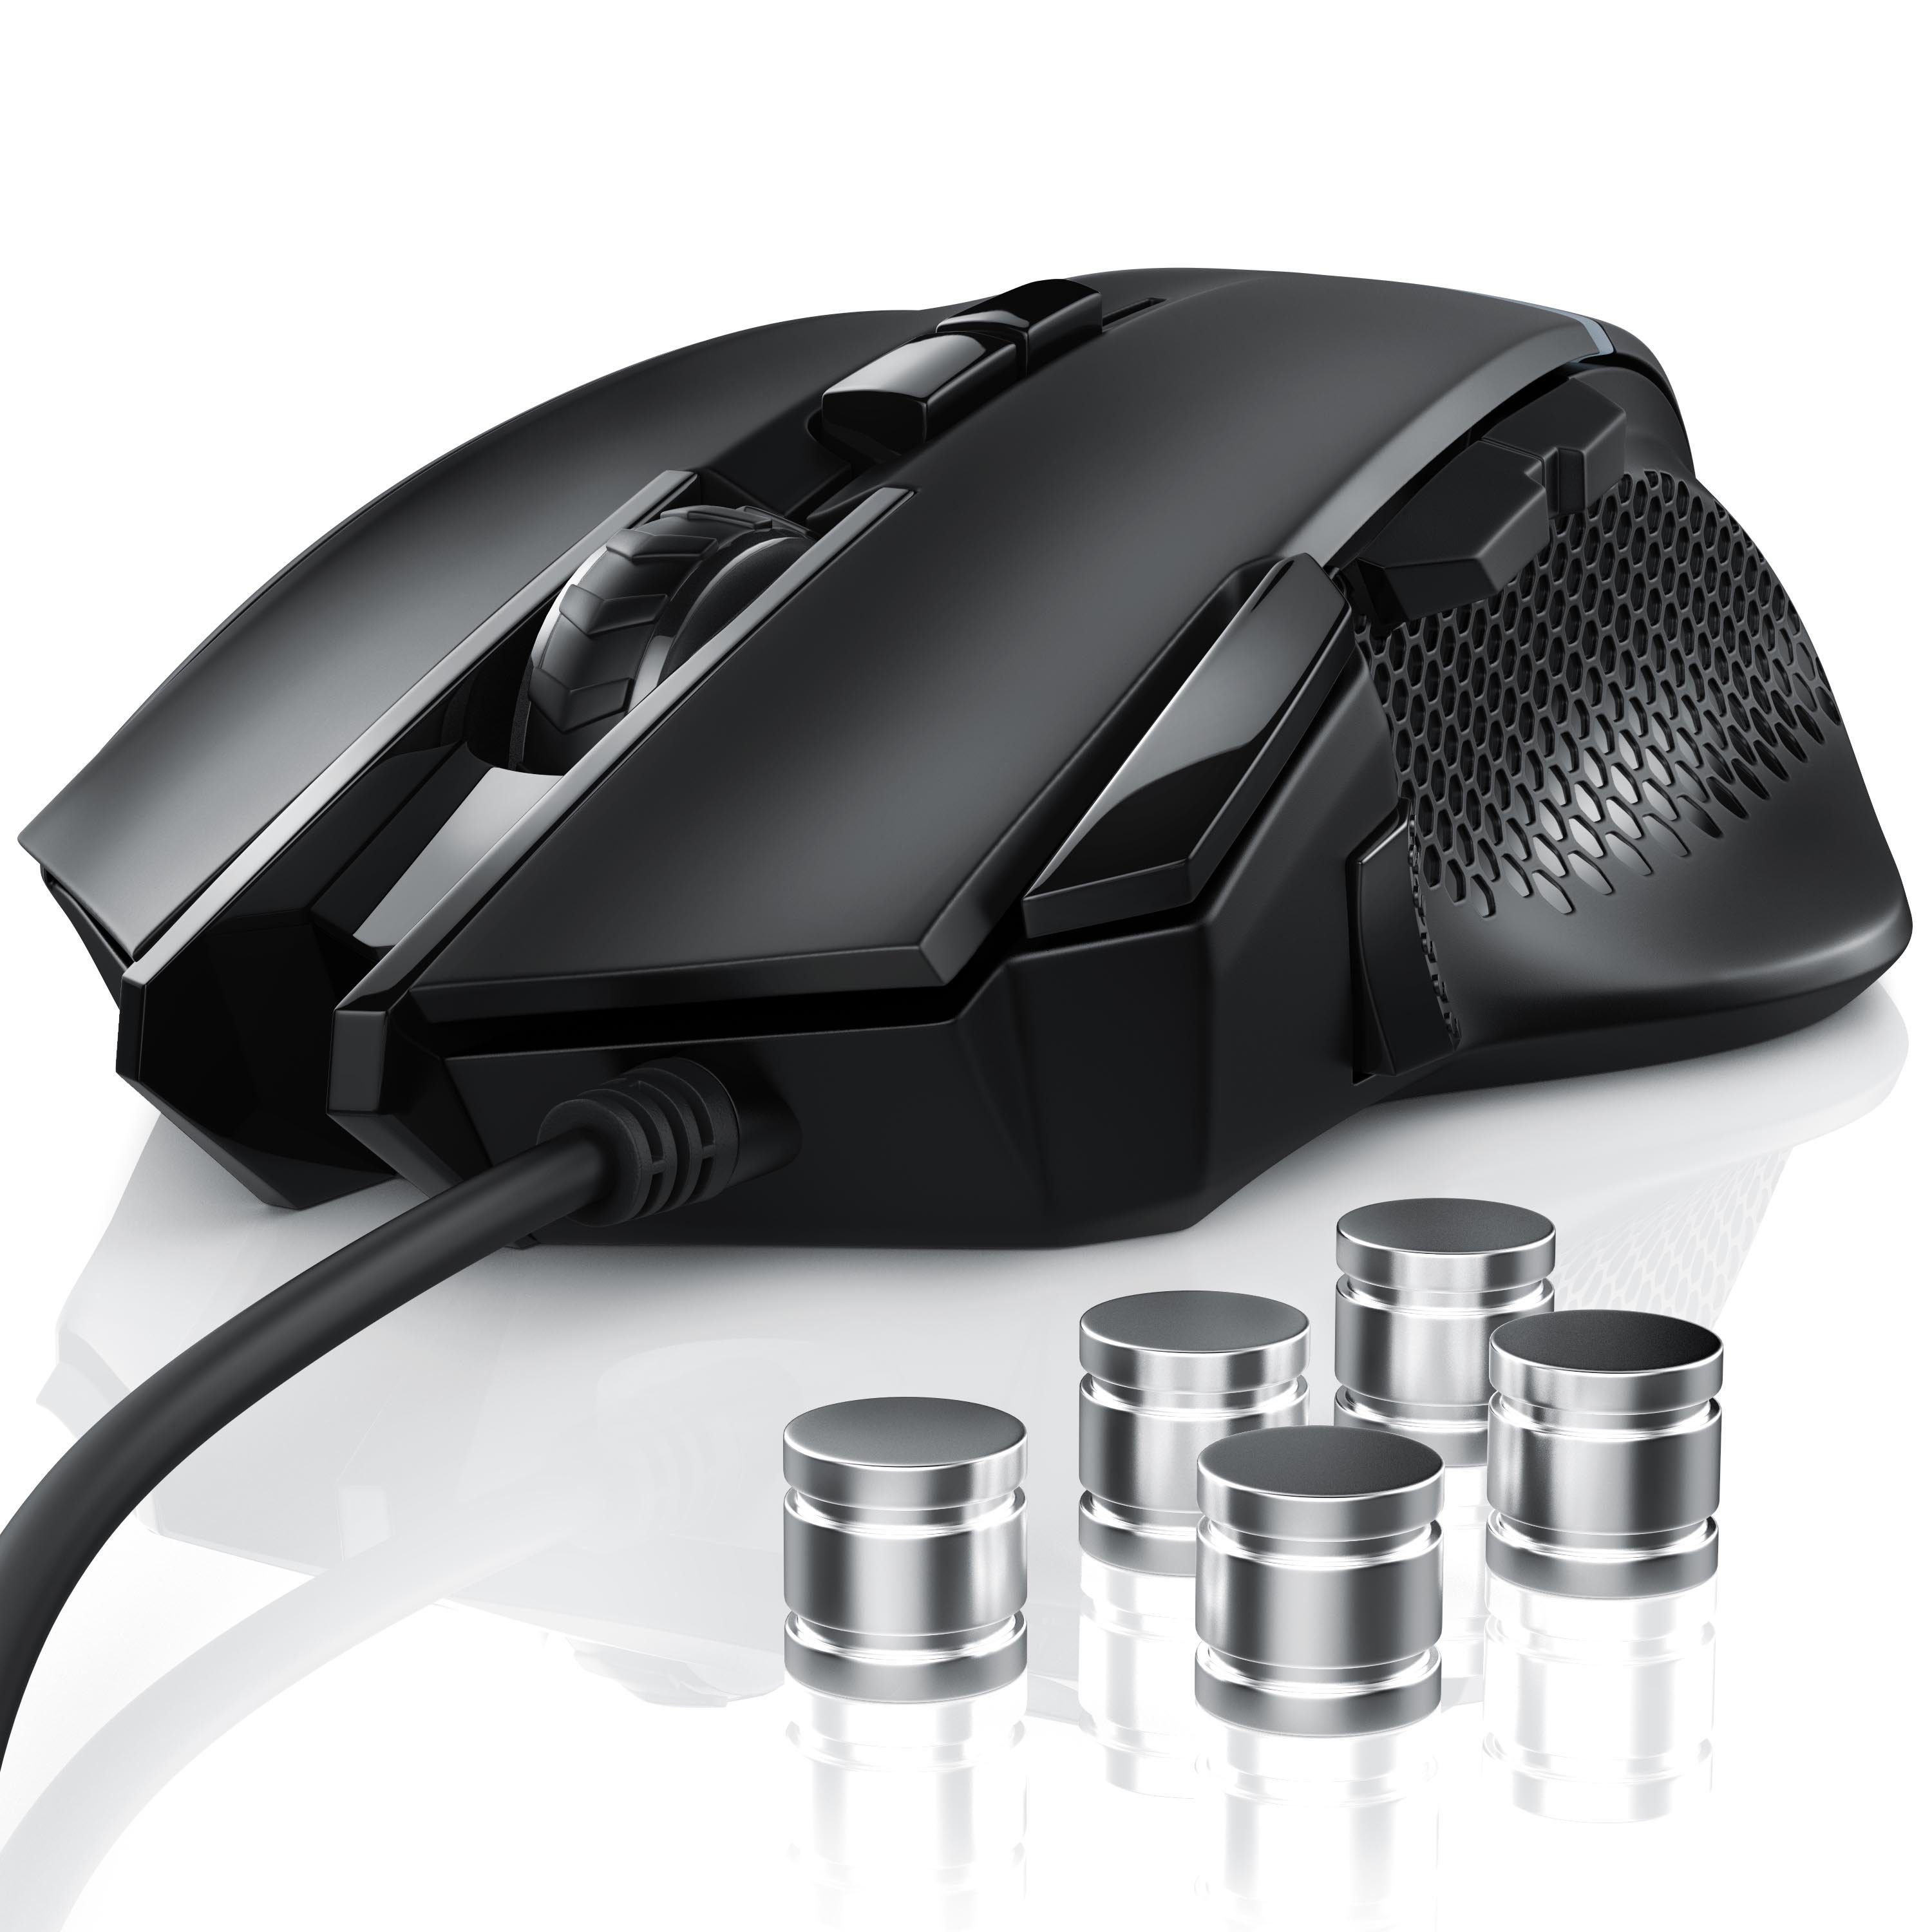 CSL Gaming-Maus Mouse 500 Gewichten) inkl. 3200 Abtastrate (kabelgebunden, ergonomisch, wählbar, dpi, dpi